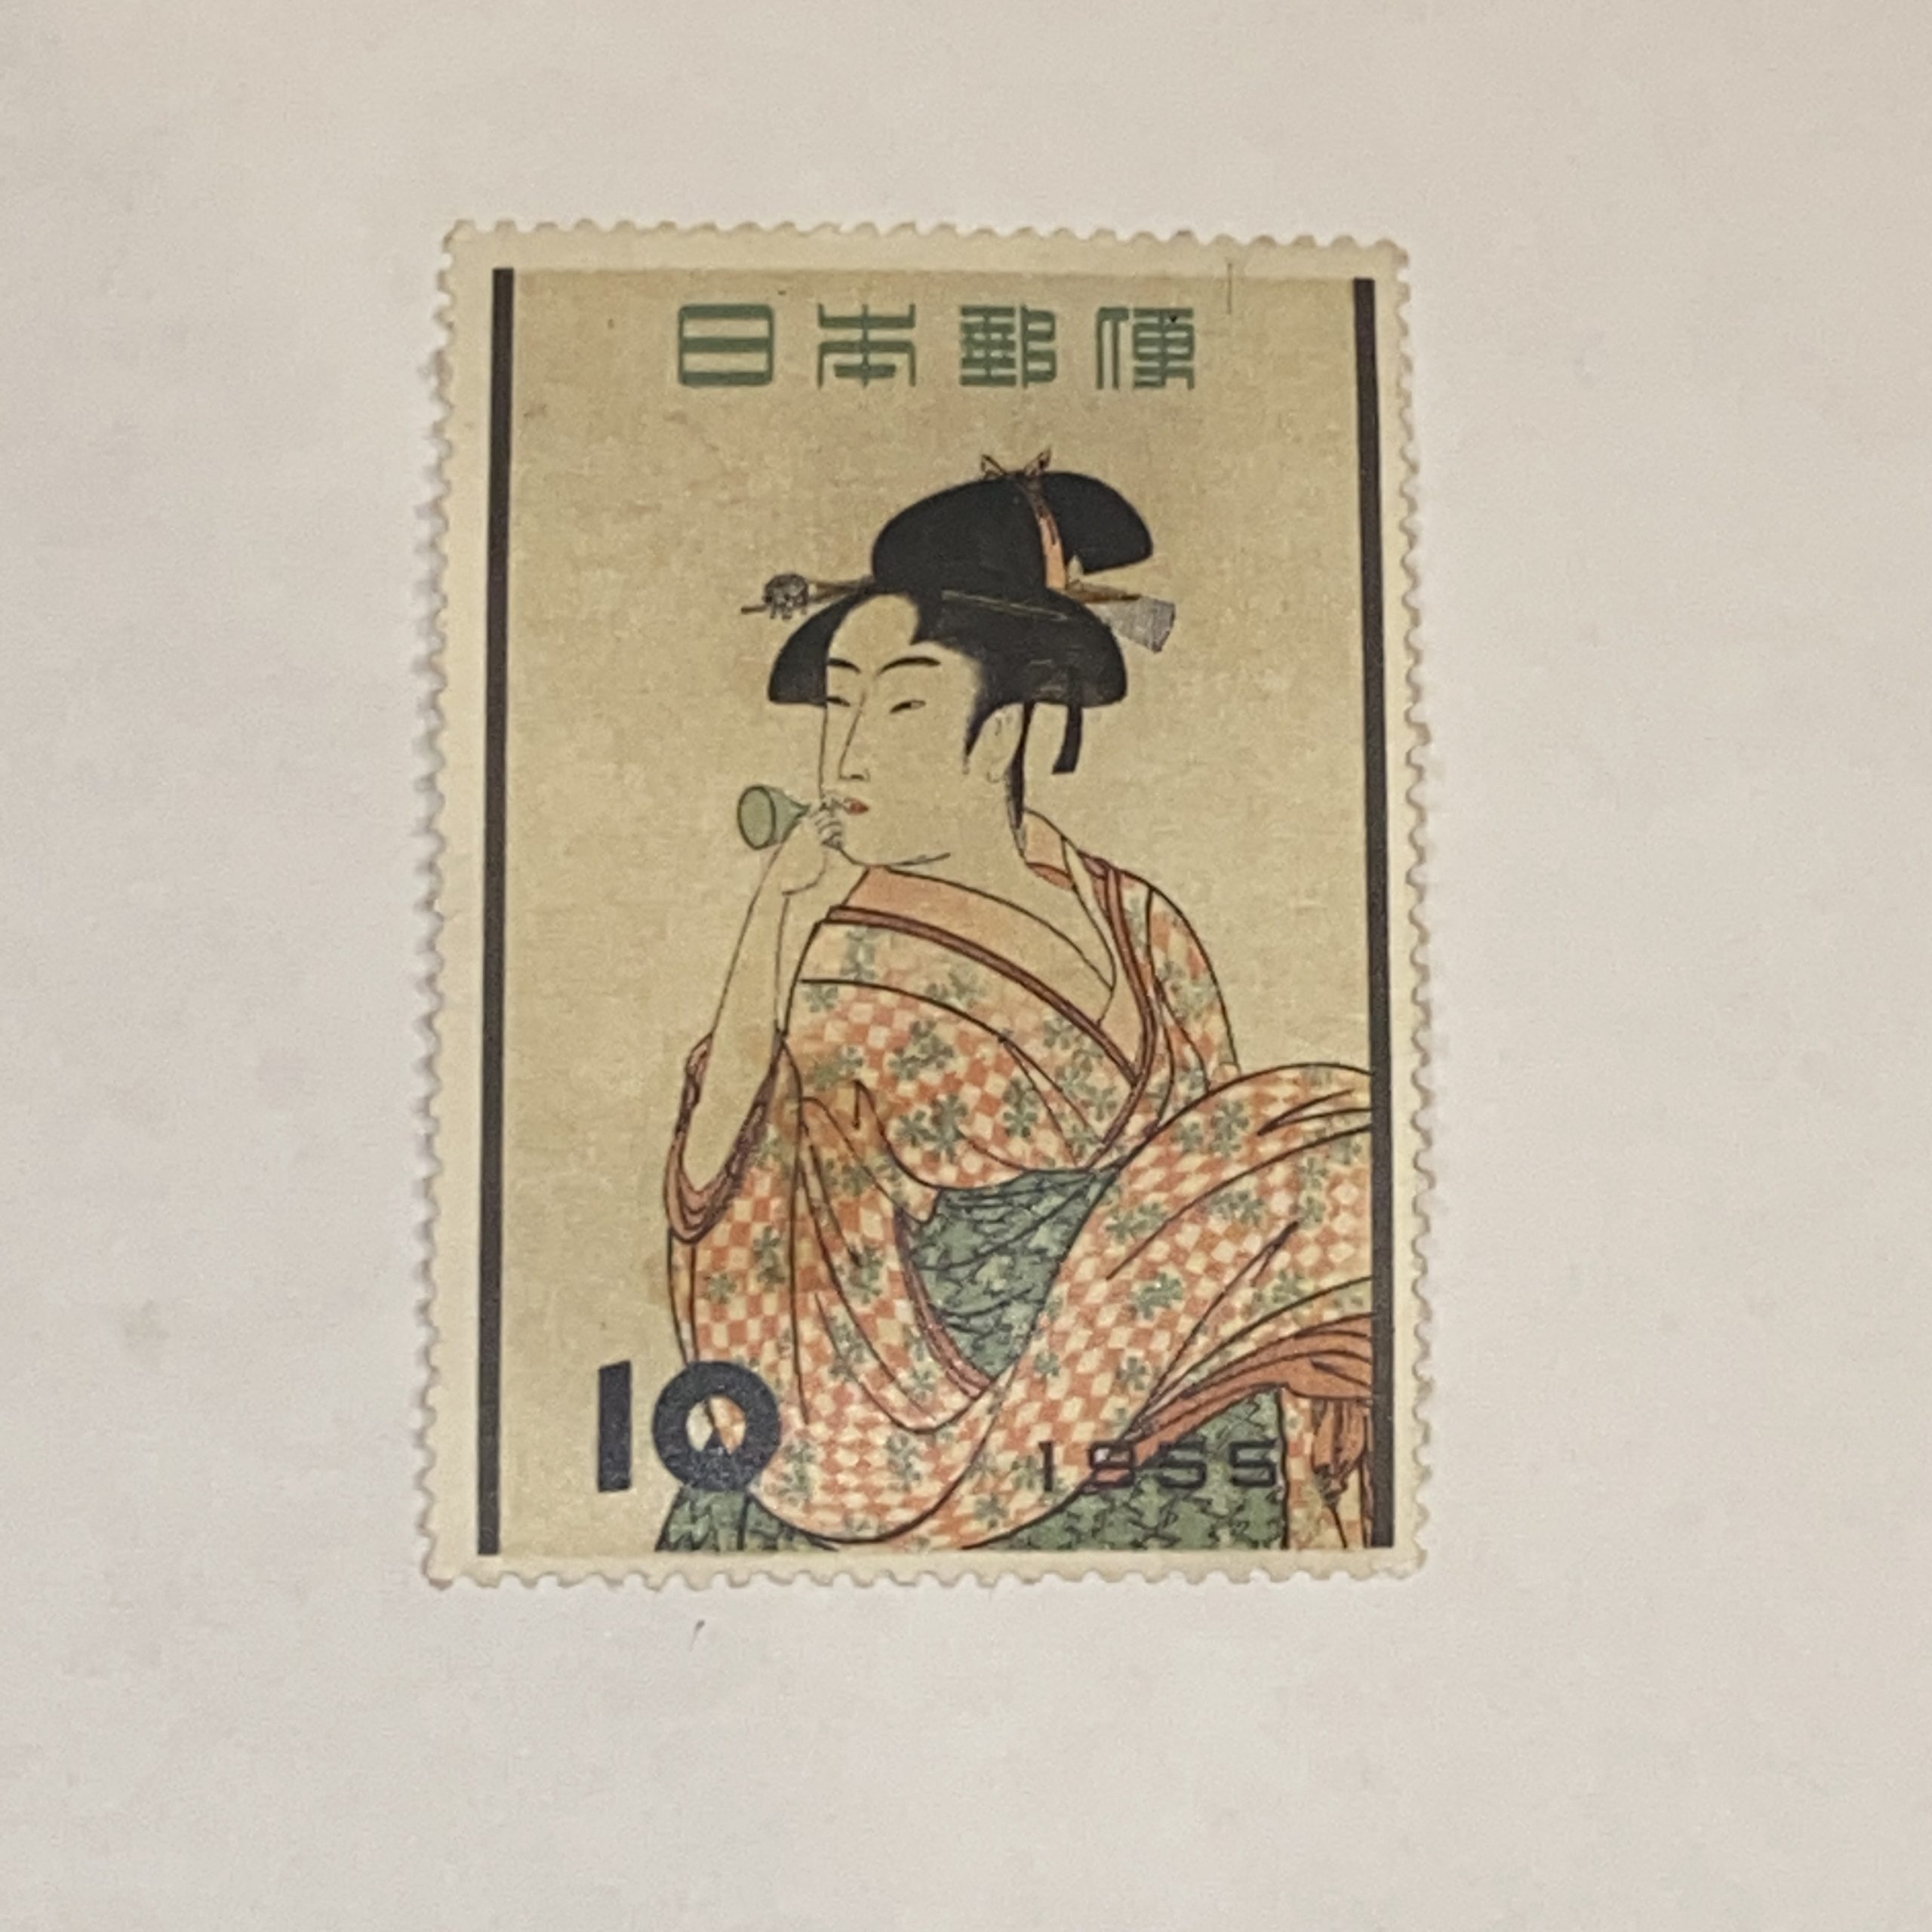 【日本切手】10円 ピードロを吹く娘 1955年